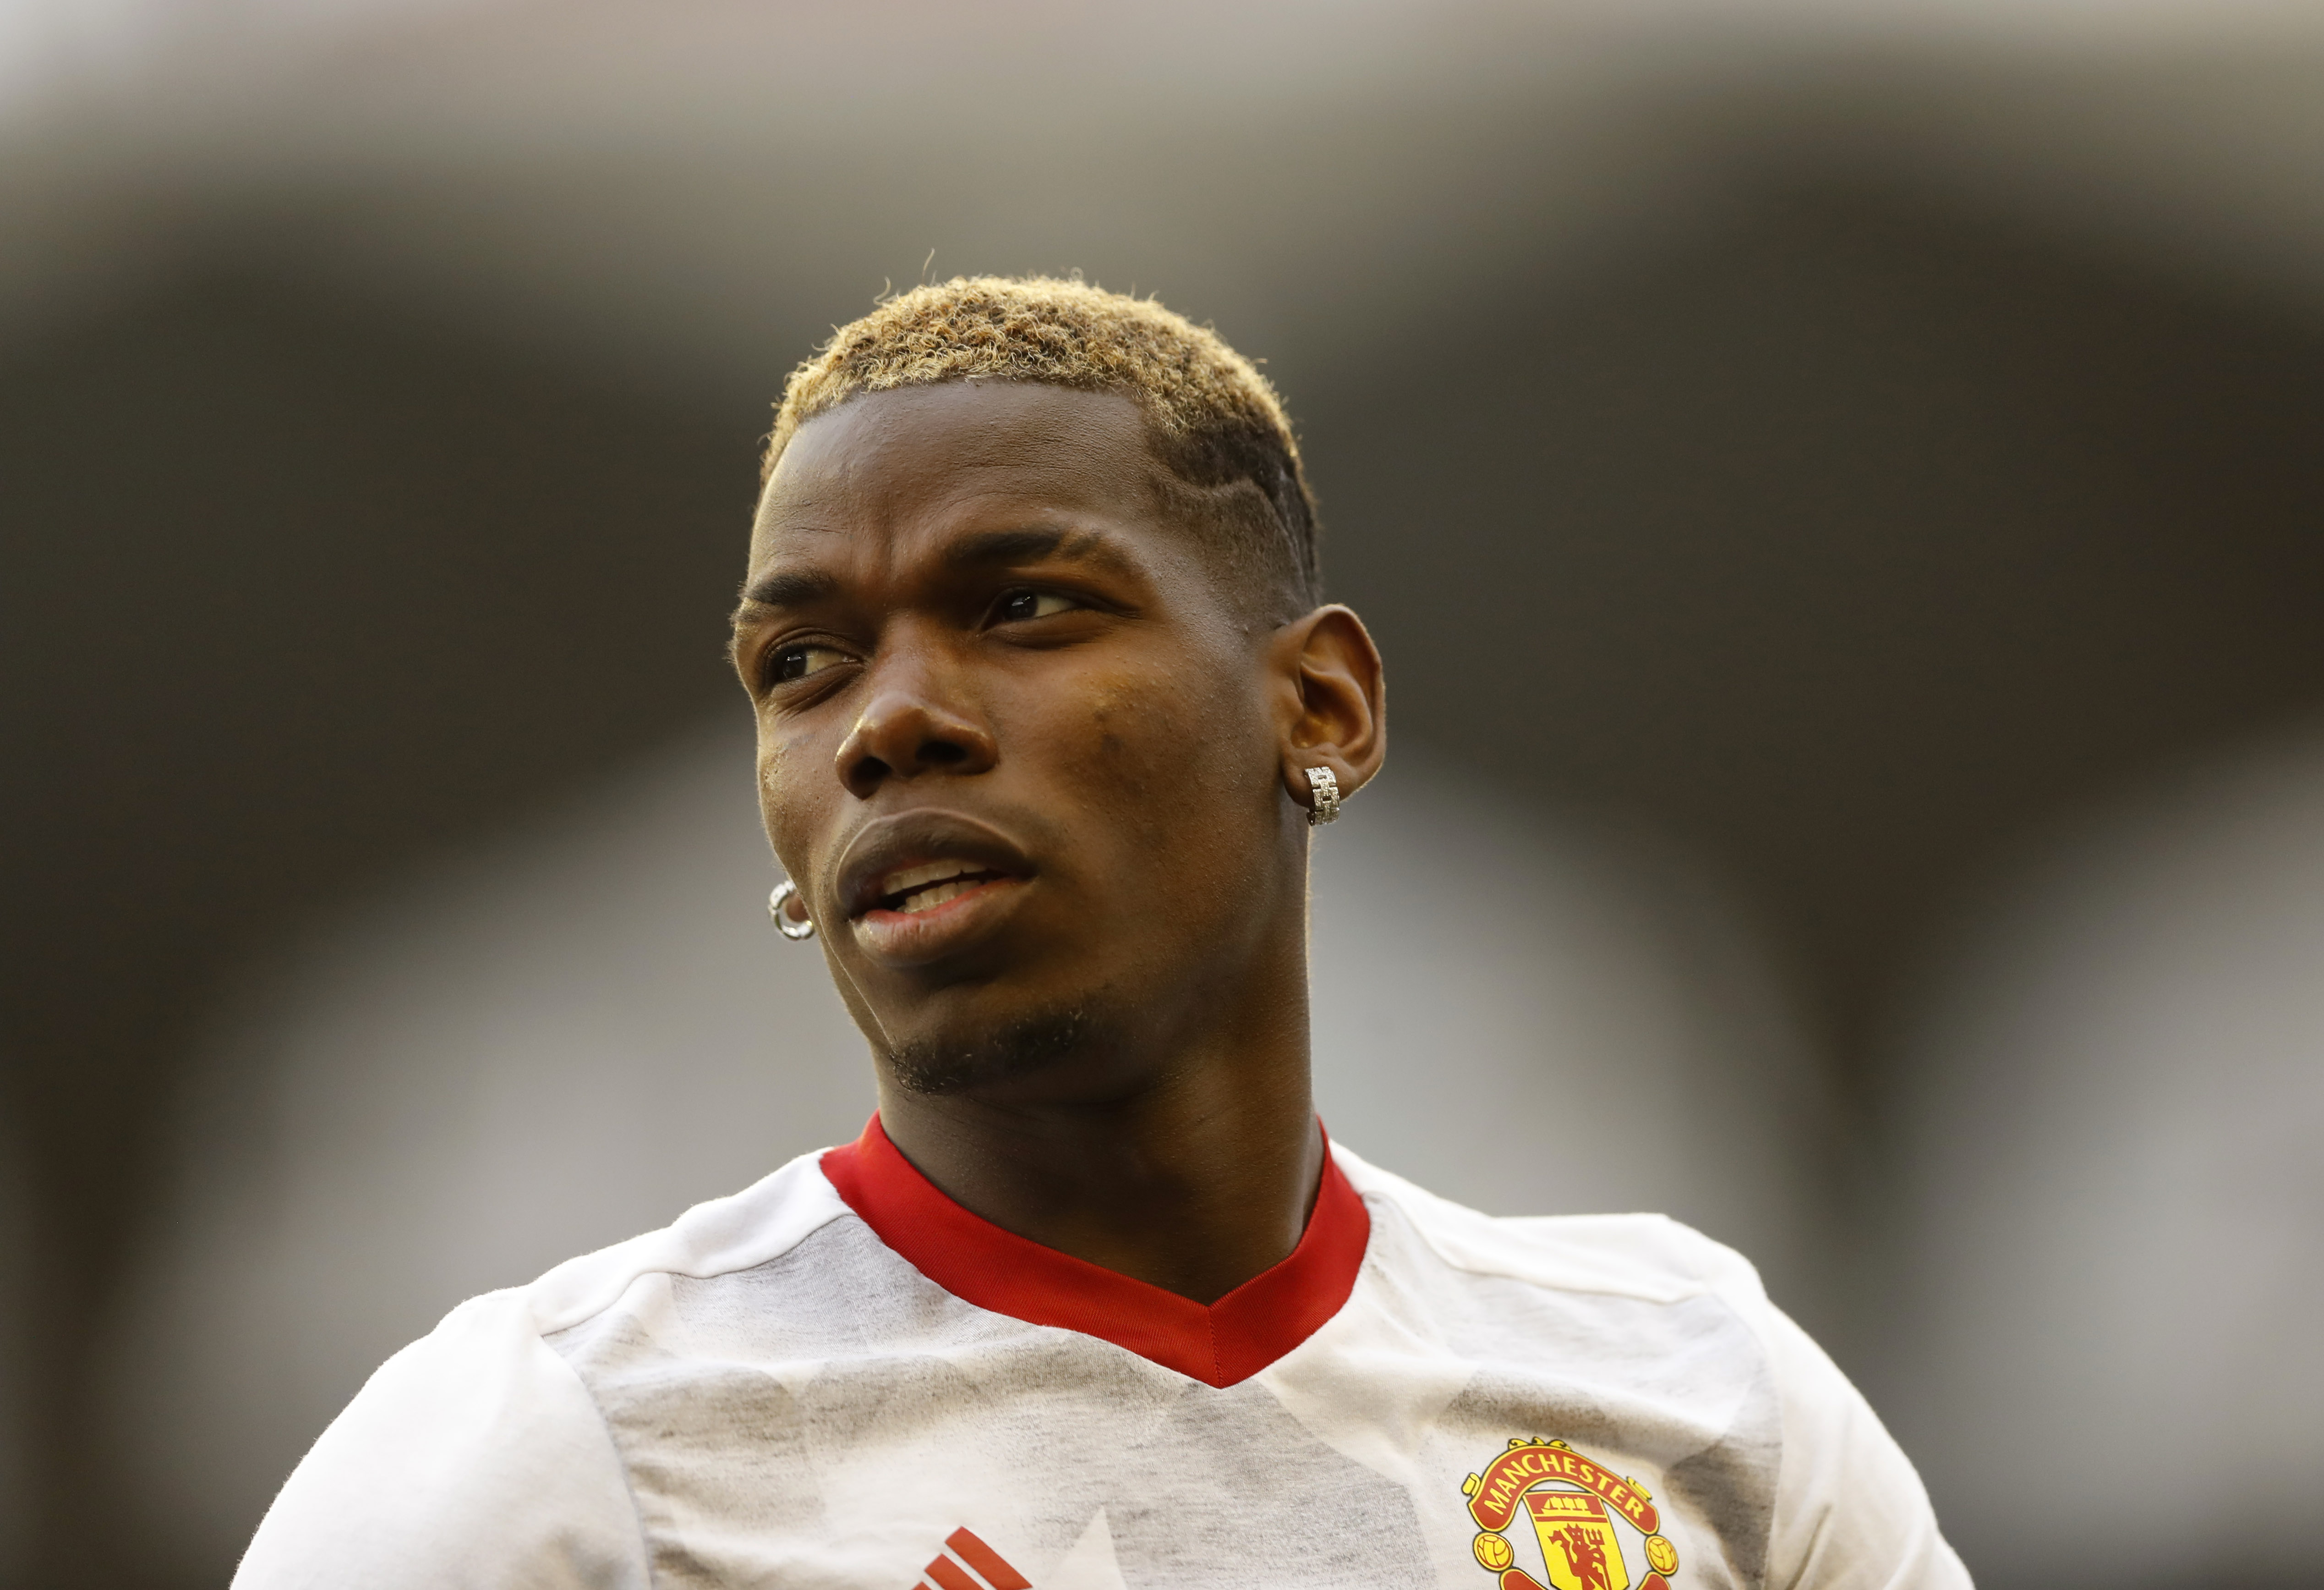 Manchester United condena los insultos racistas contra Paul Pogba